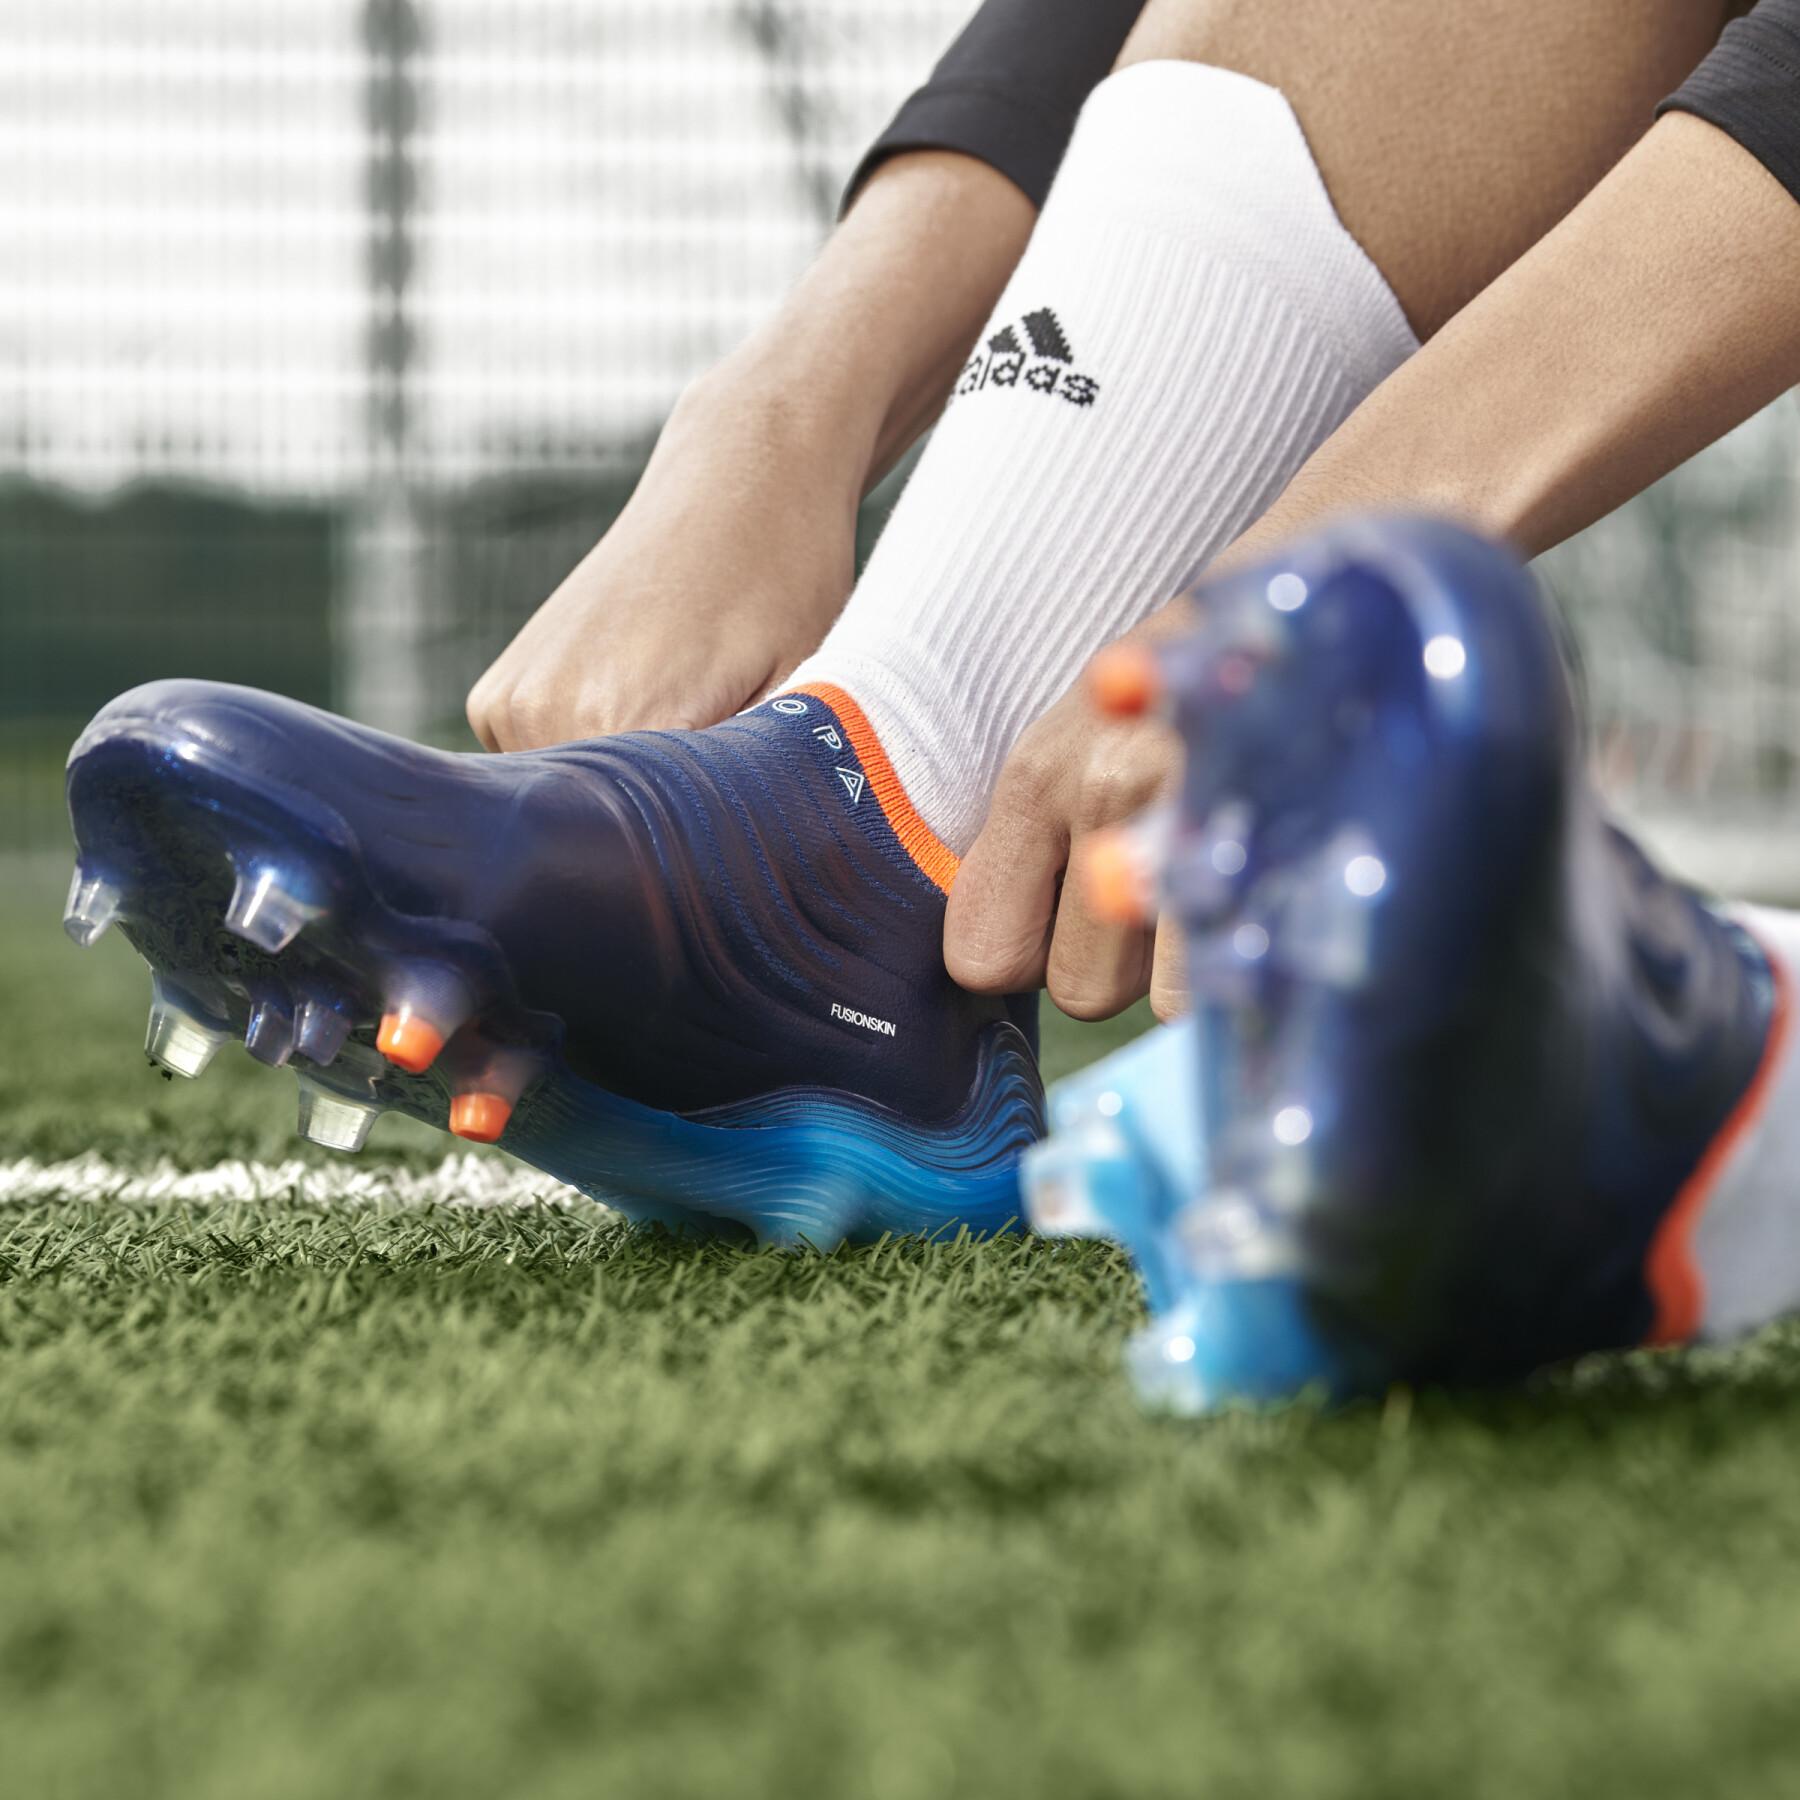 Chaussures de football adidas Copa Sense+ FG - Sapphire Edge Pack